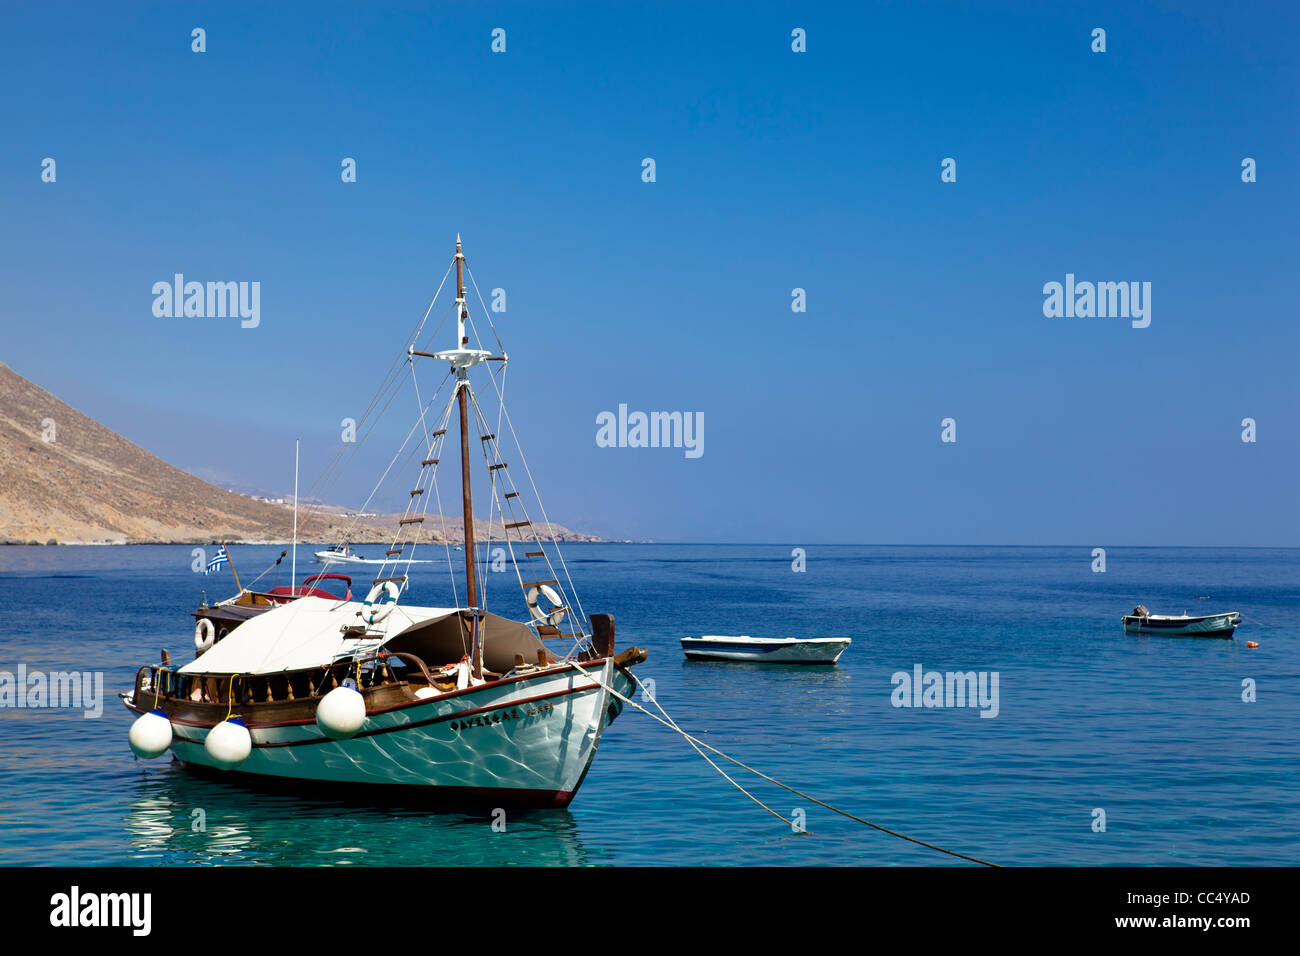 Un petit bateau de pêcheur dans l'île de Crète, Grèce. Photo prise dans un jour ensoleillé, ciel bleu et mer calme. Banque D'Images